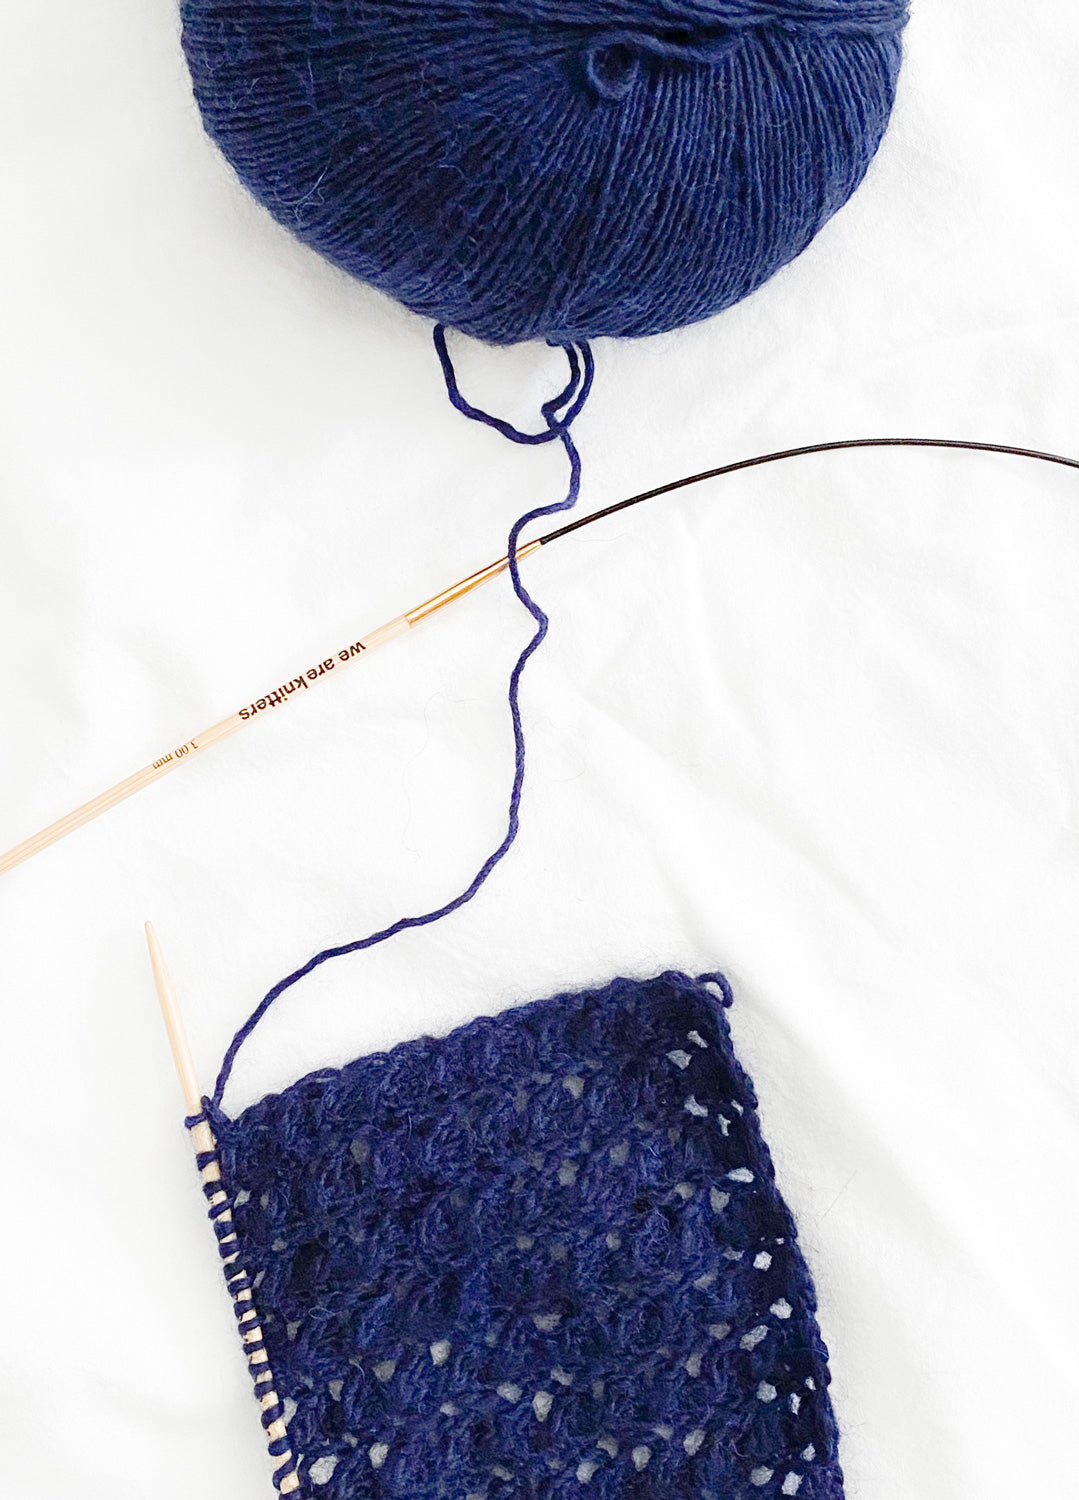 The Mixed Yarn Sky Blue – weareknitters